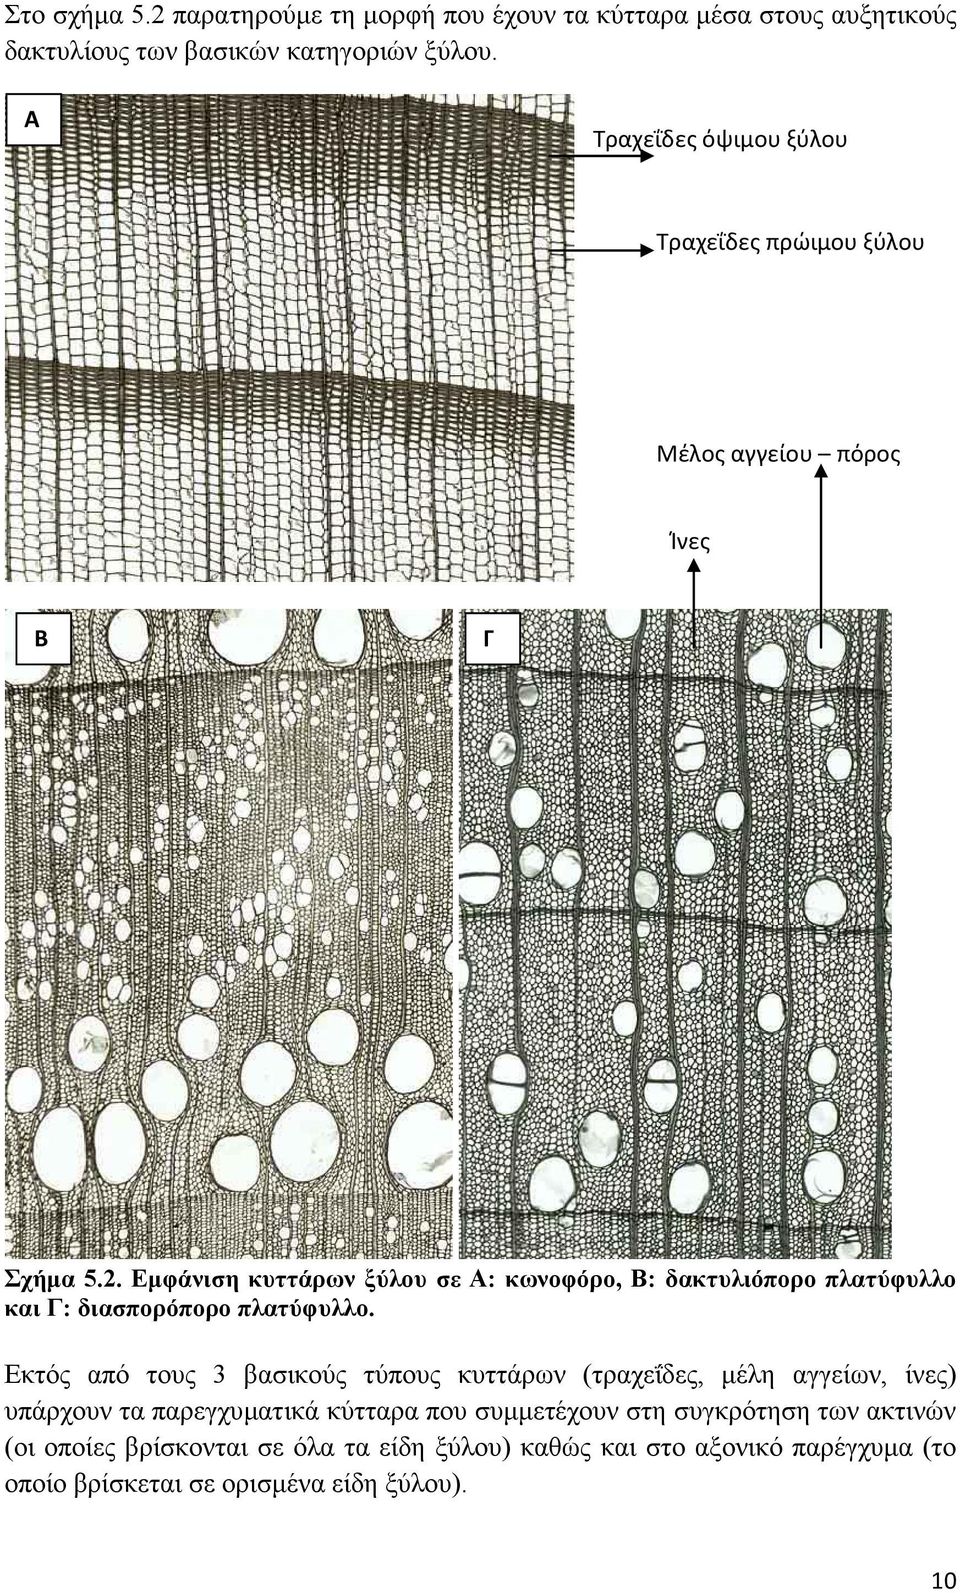 Εμφάνιση κυττάρων ξύλου σε Α: κωνοφόρο, Β: δακτυλιόπορο πλατύφυλλο και Γ: διασπορόπορο πλατύφυλλο.